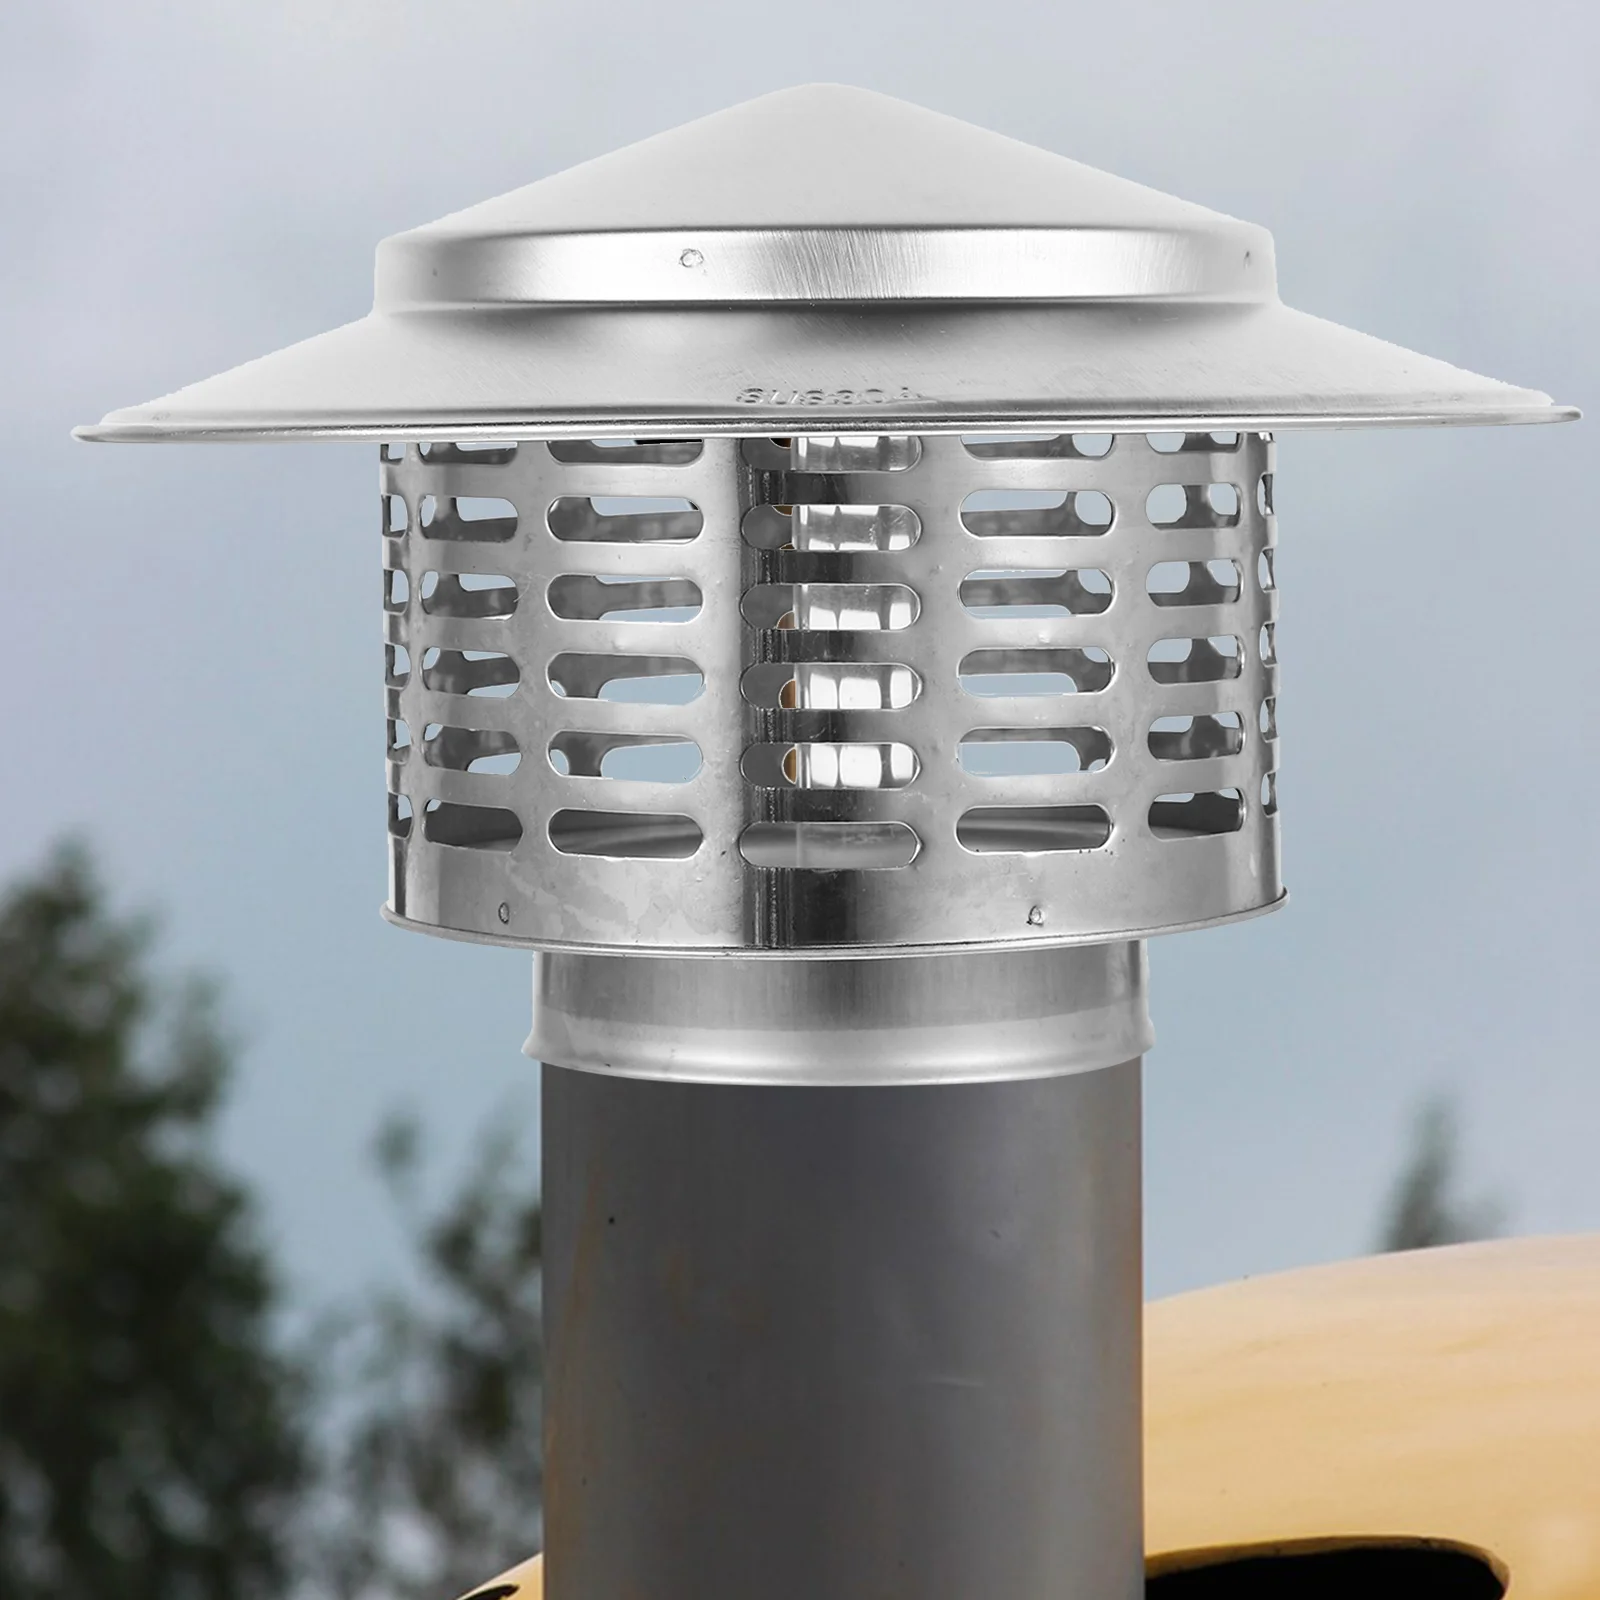 

Колпачок для дымохода, крышка для вентиляционного отверстия для крыши, дождевой зонт, воронка для дыма из нержавеющей стали 304